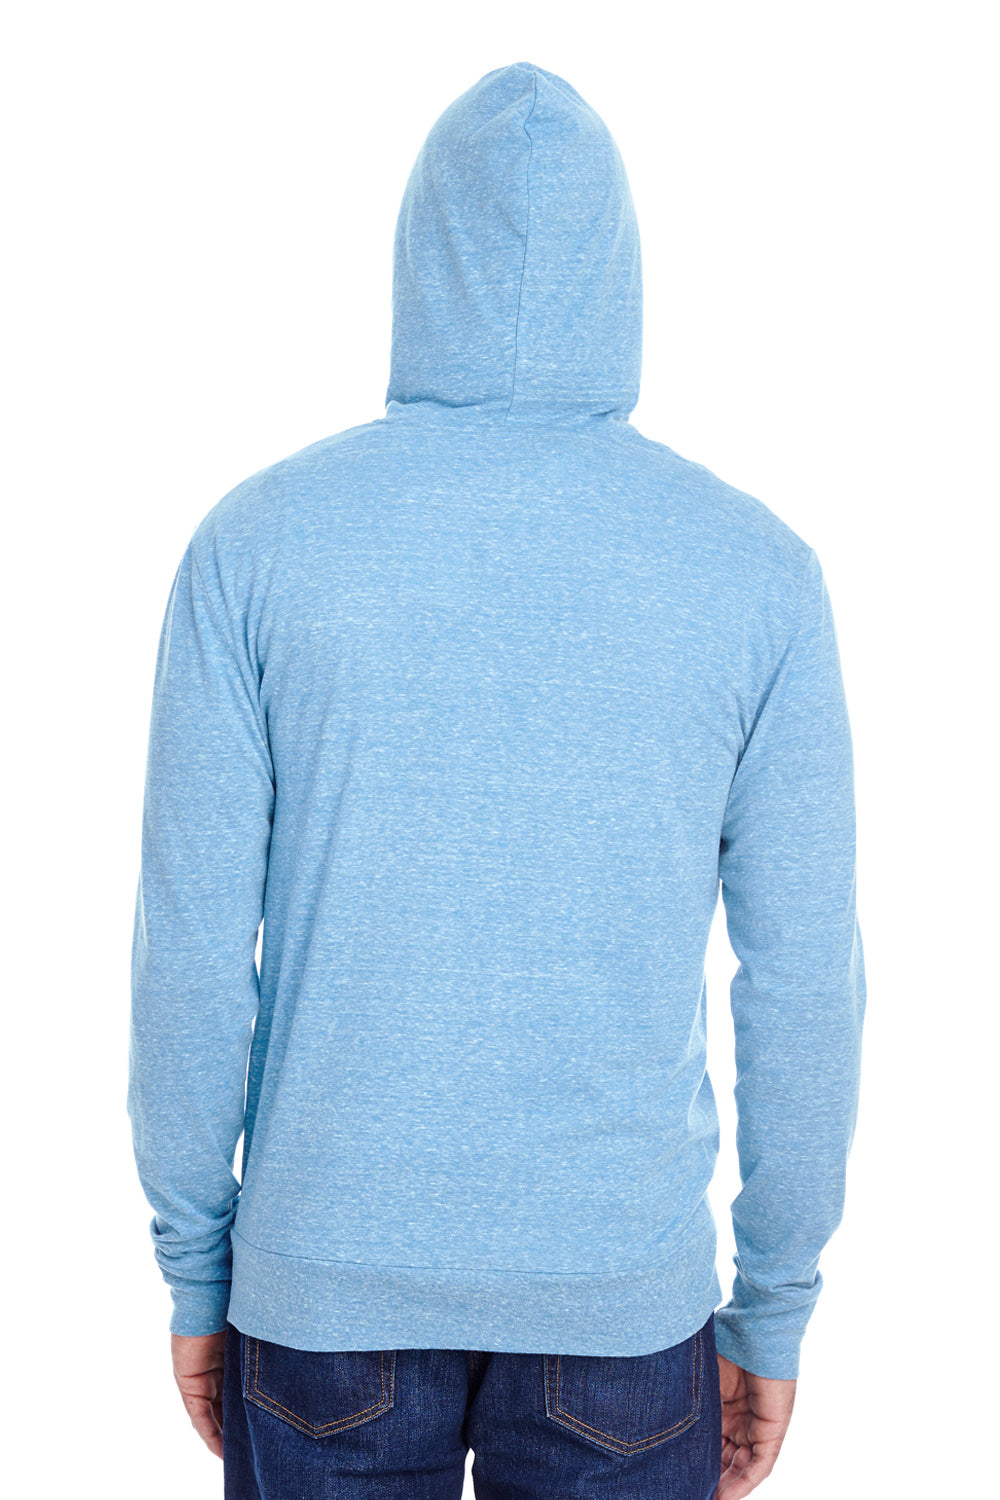 Threadfast Apparel 302Z Mens Full Zip Hooded Sweatshirt Hoodie Royal Blue Back